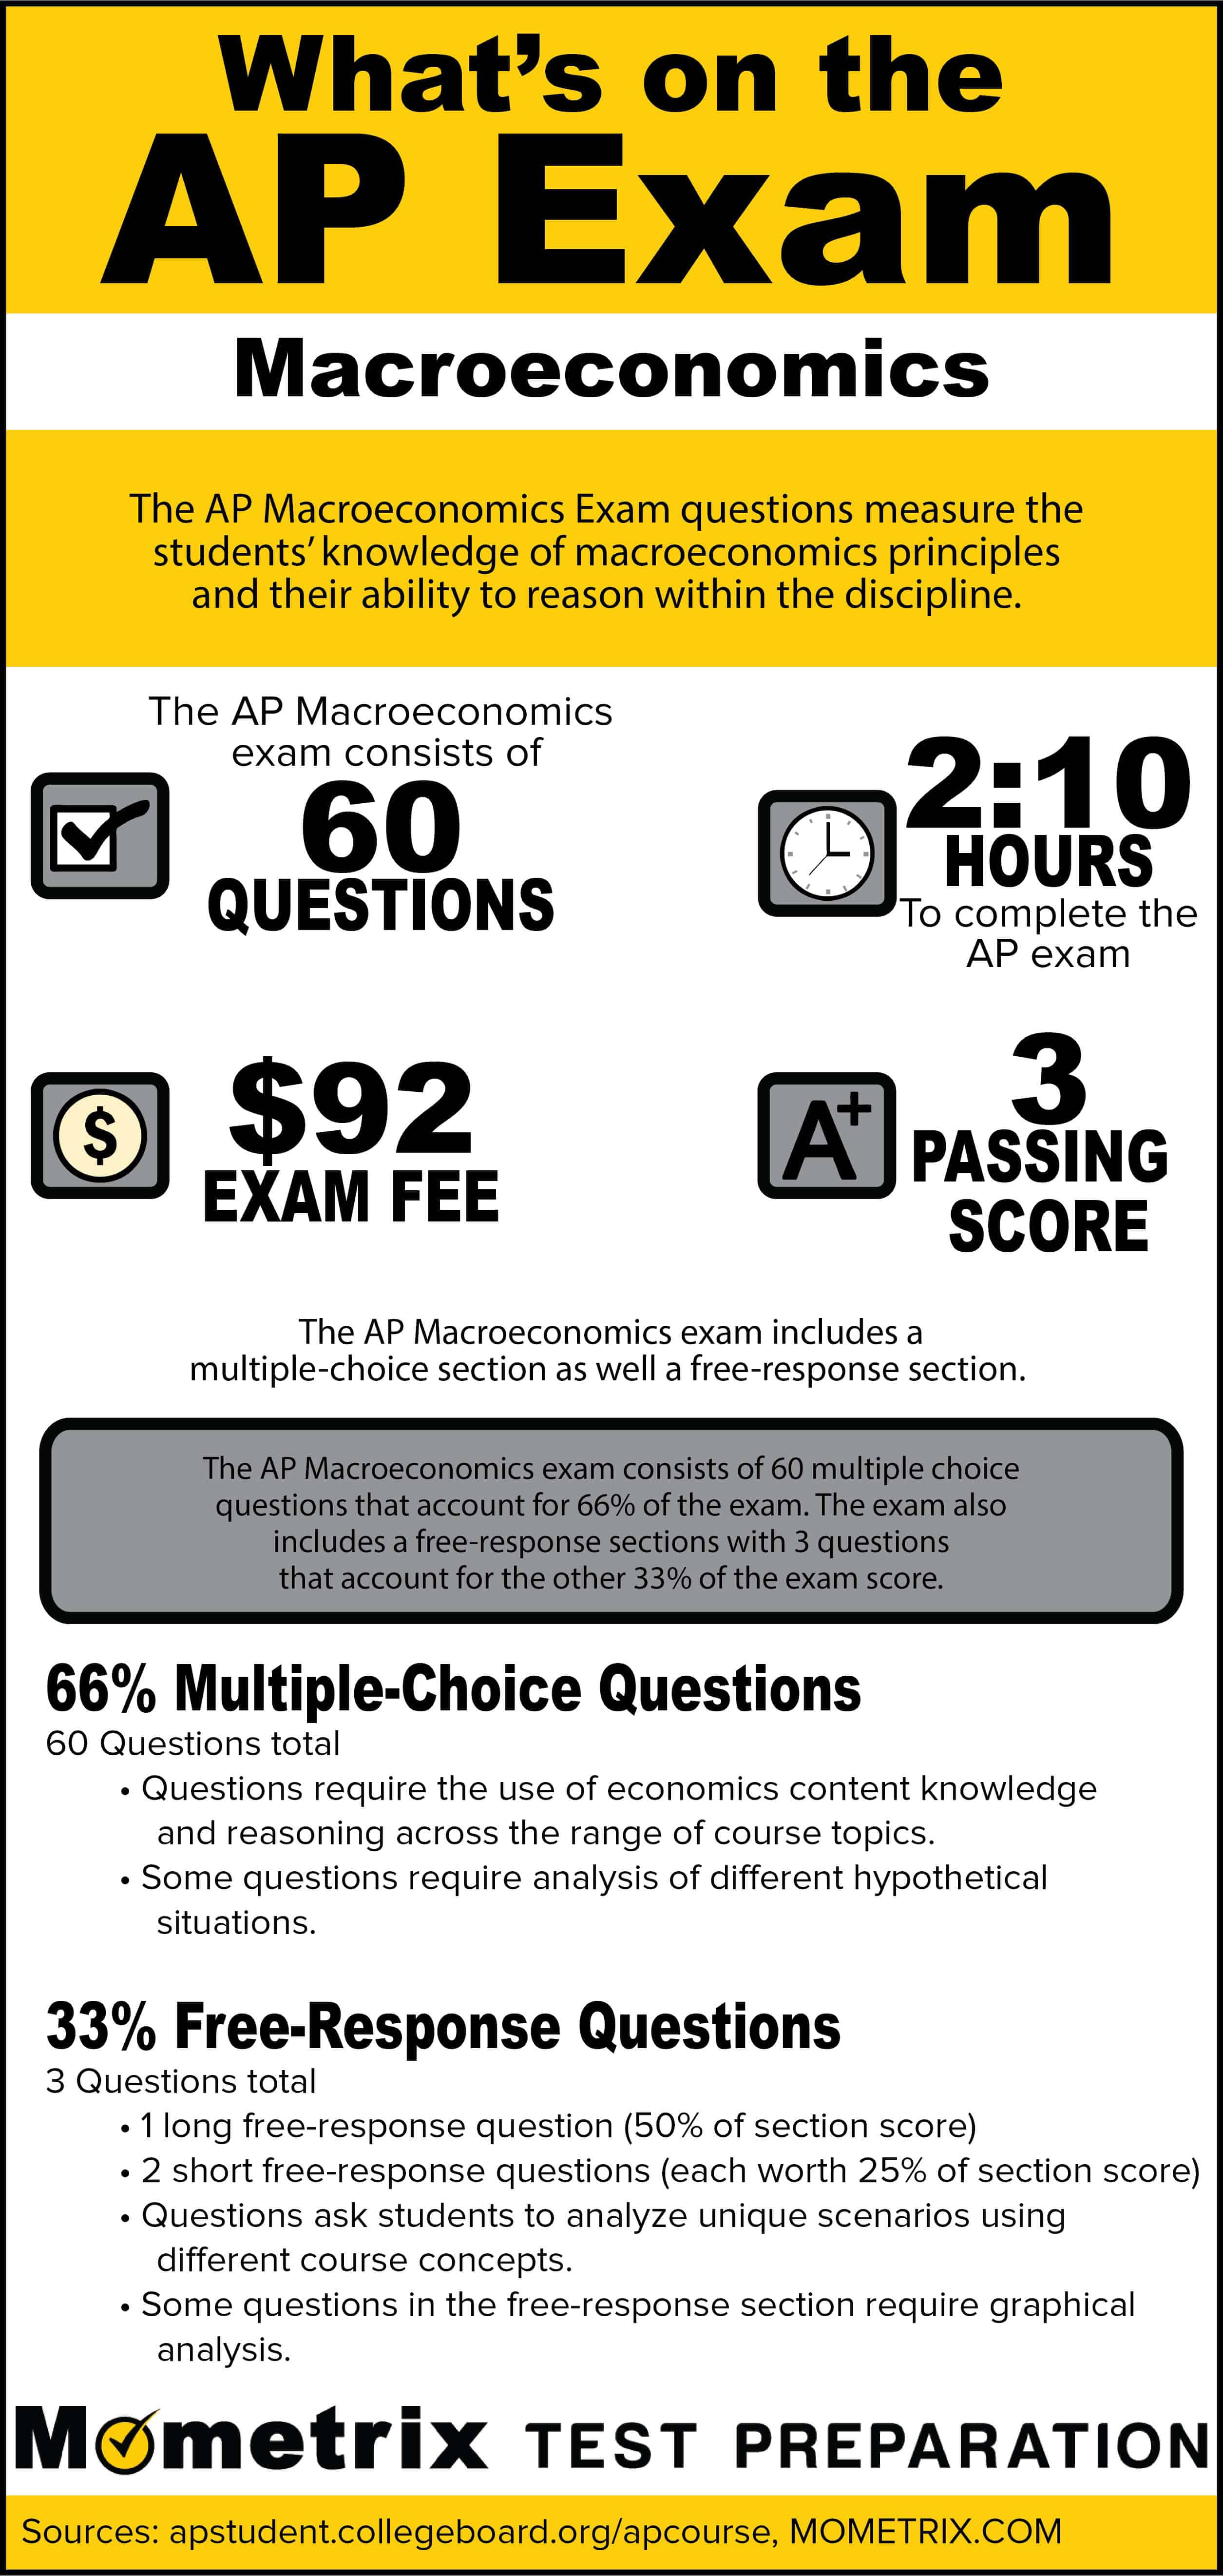 What's on the AP Macroeconomics Exam